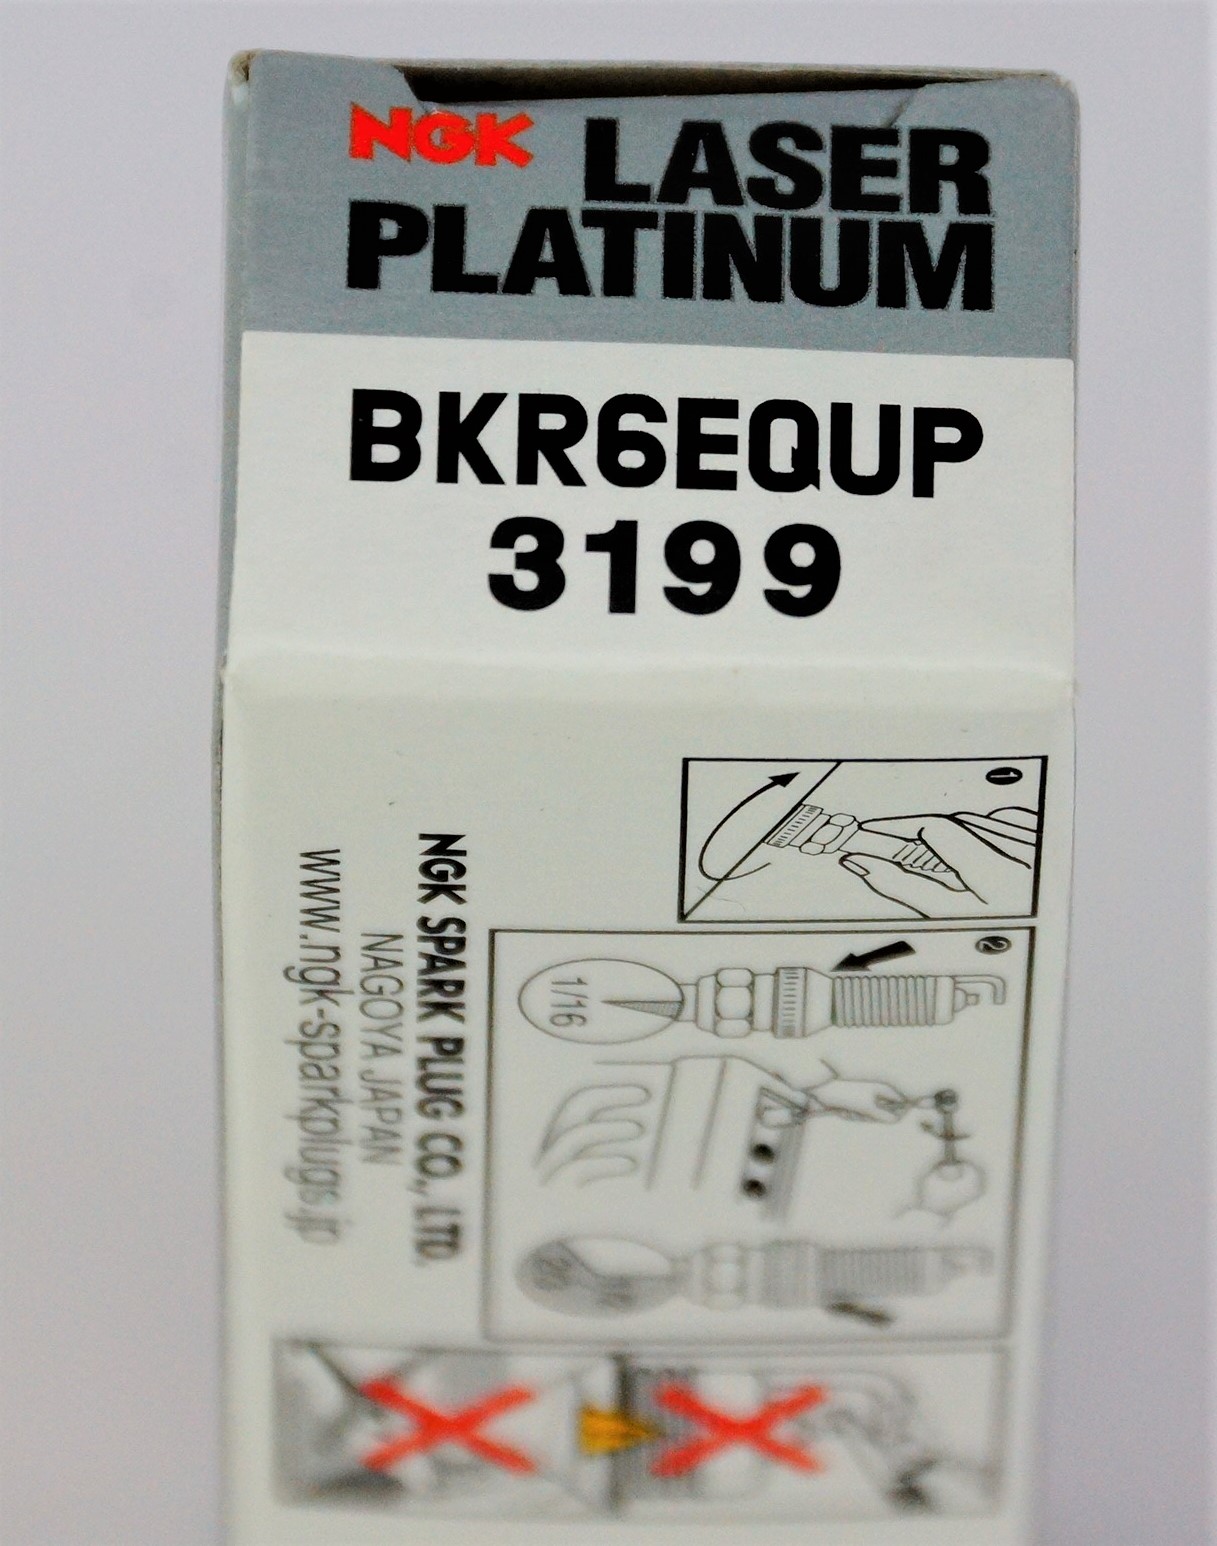 Set of 12 NGK 3199 Laser Platinum Spark Plugs BKR6EQUP - image 6